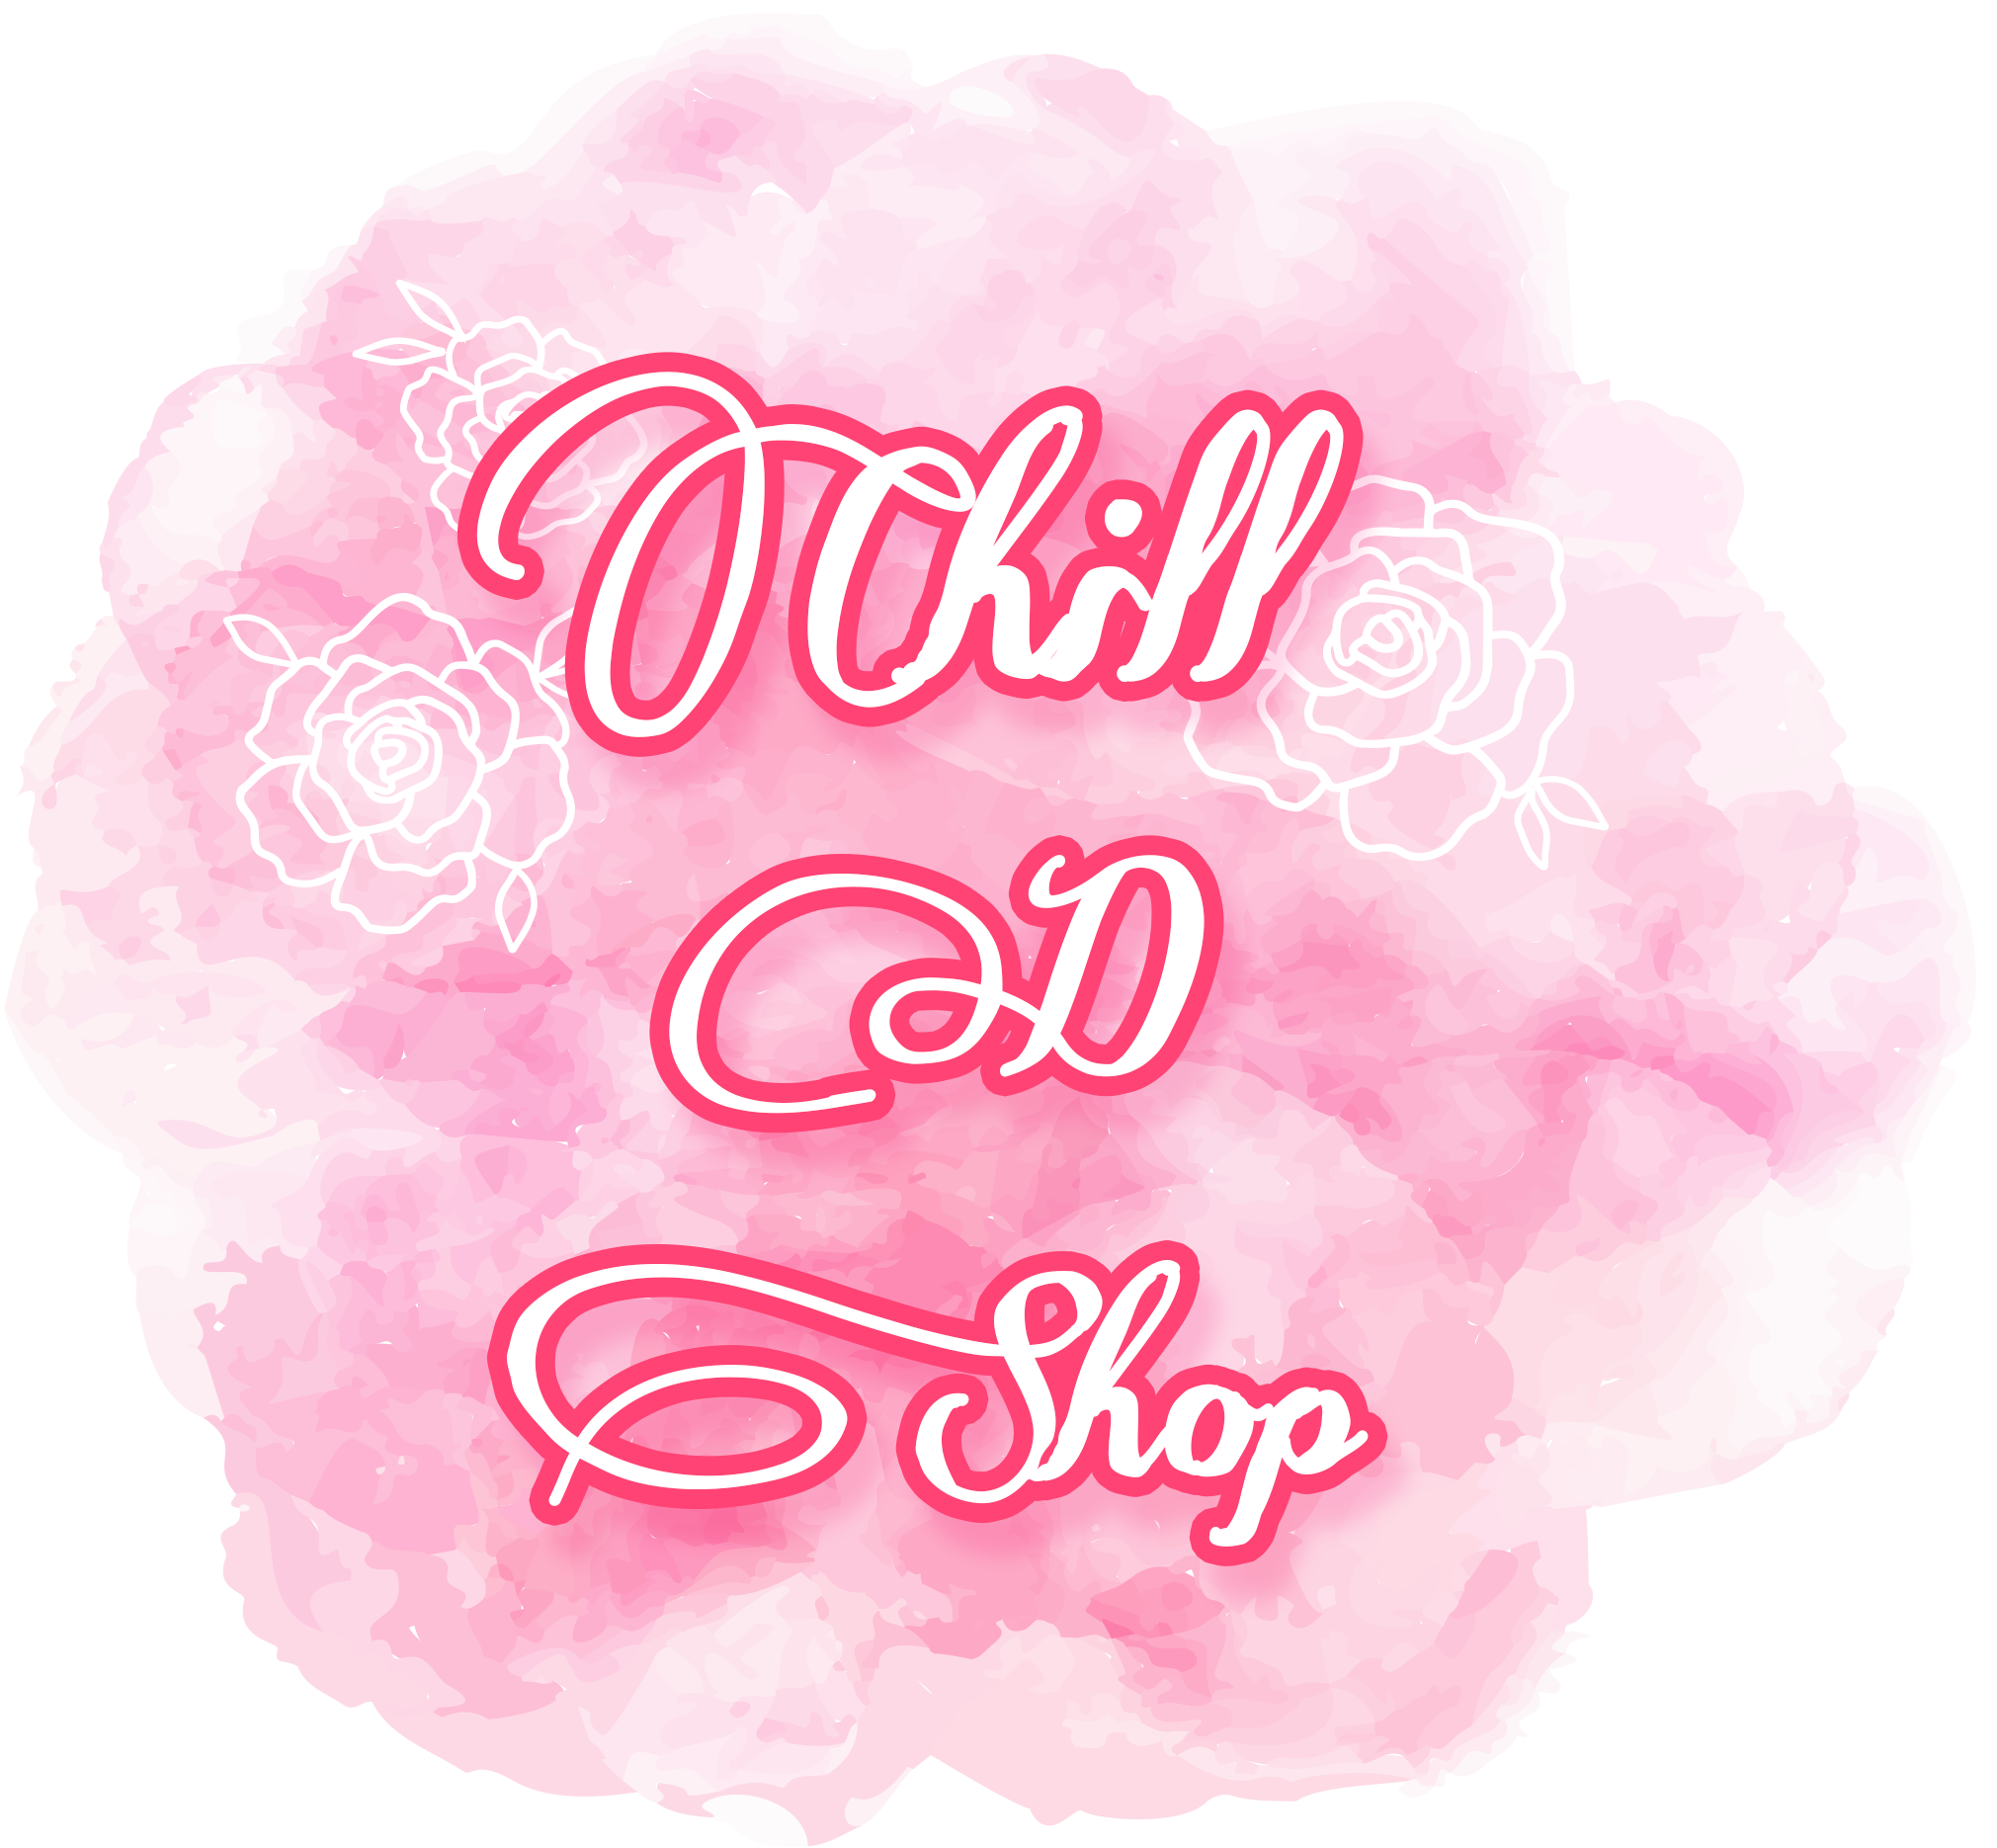 Chill D Shop